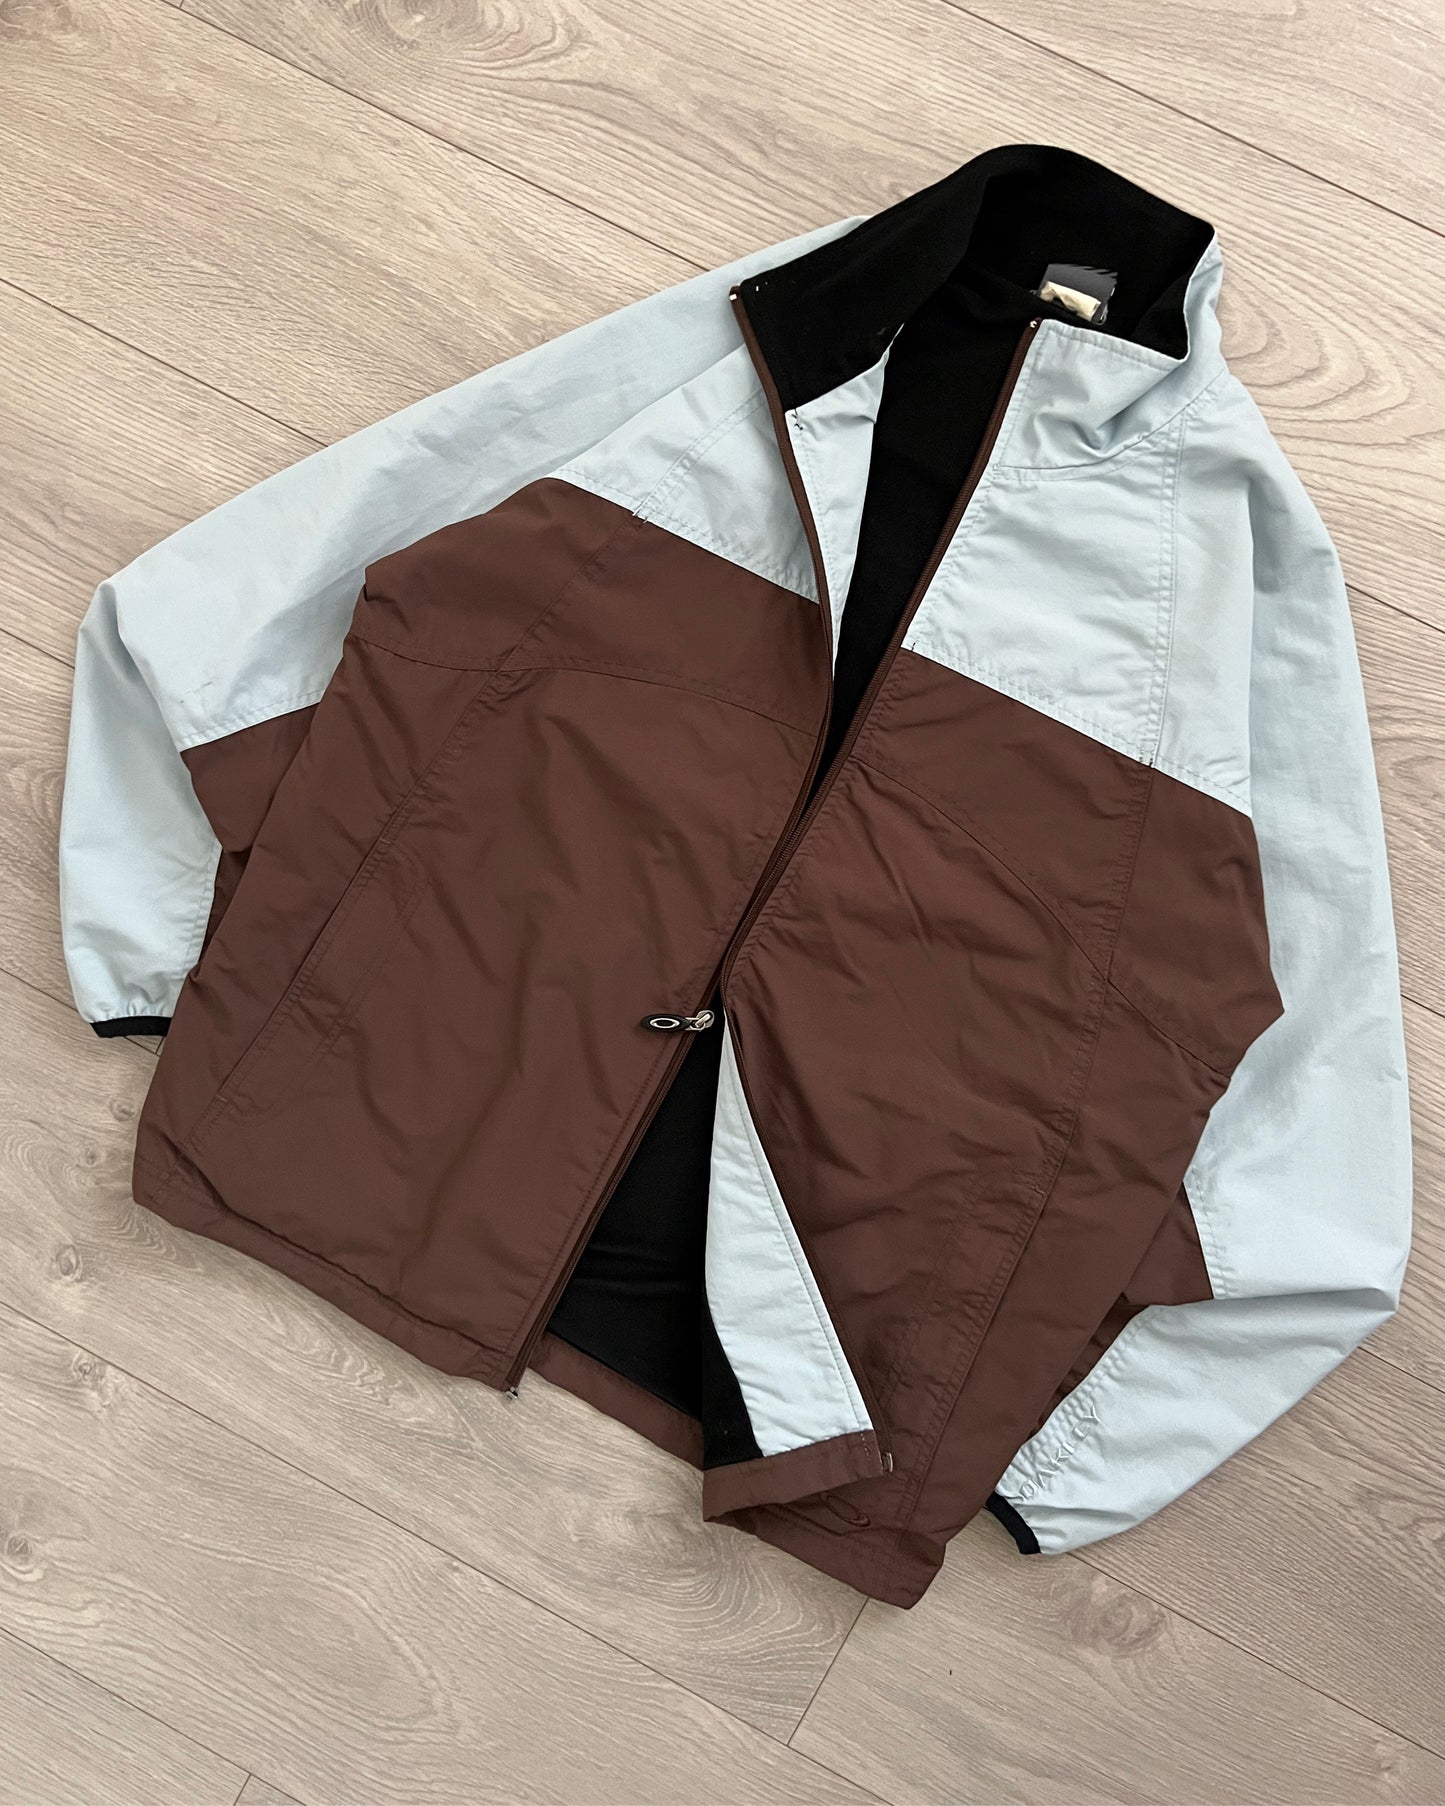 Oakley FW2005 Two-Tone Fleece Lined Panelled Jacket - Size M